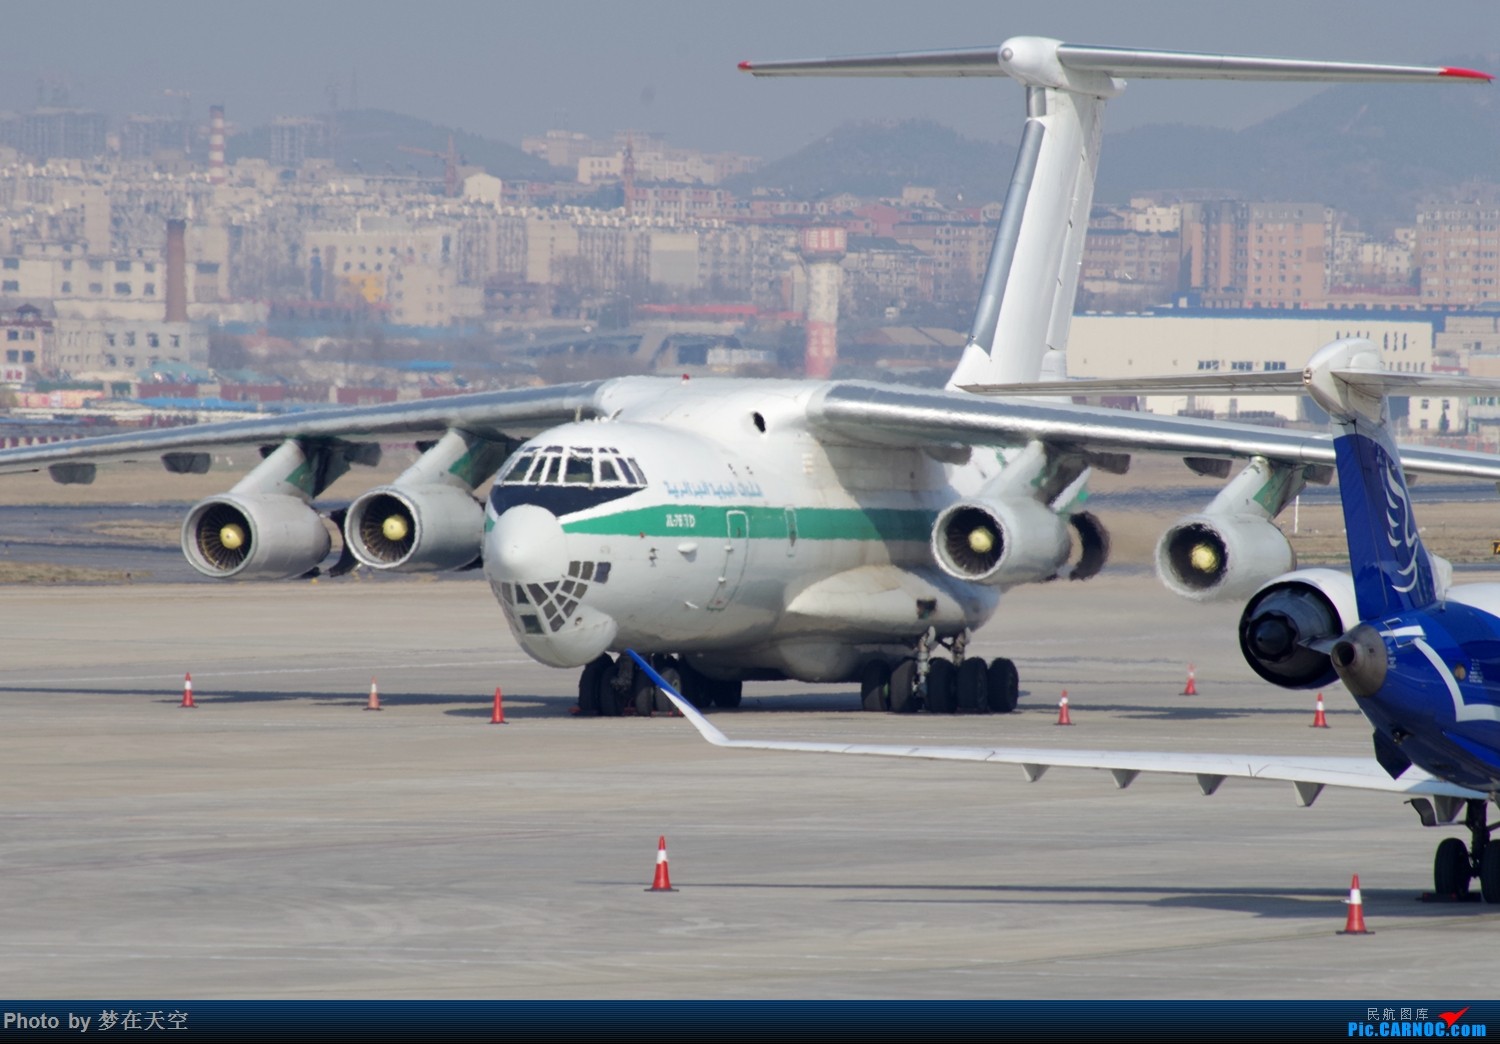 أكبر و أضخم موسوعة صور لطائرات النقل و الشحن الجزائرية AAF- iL 76/ iL 78 - صفحة 19 201504041016338745